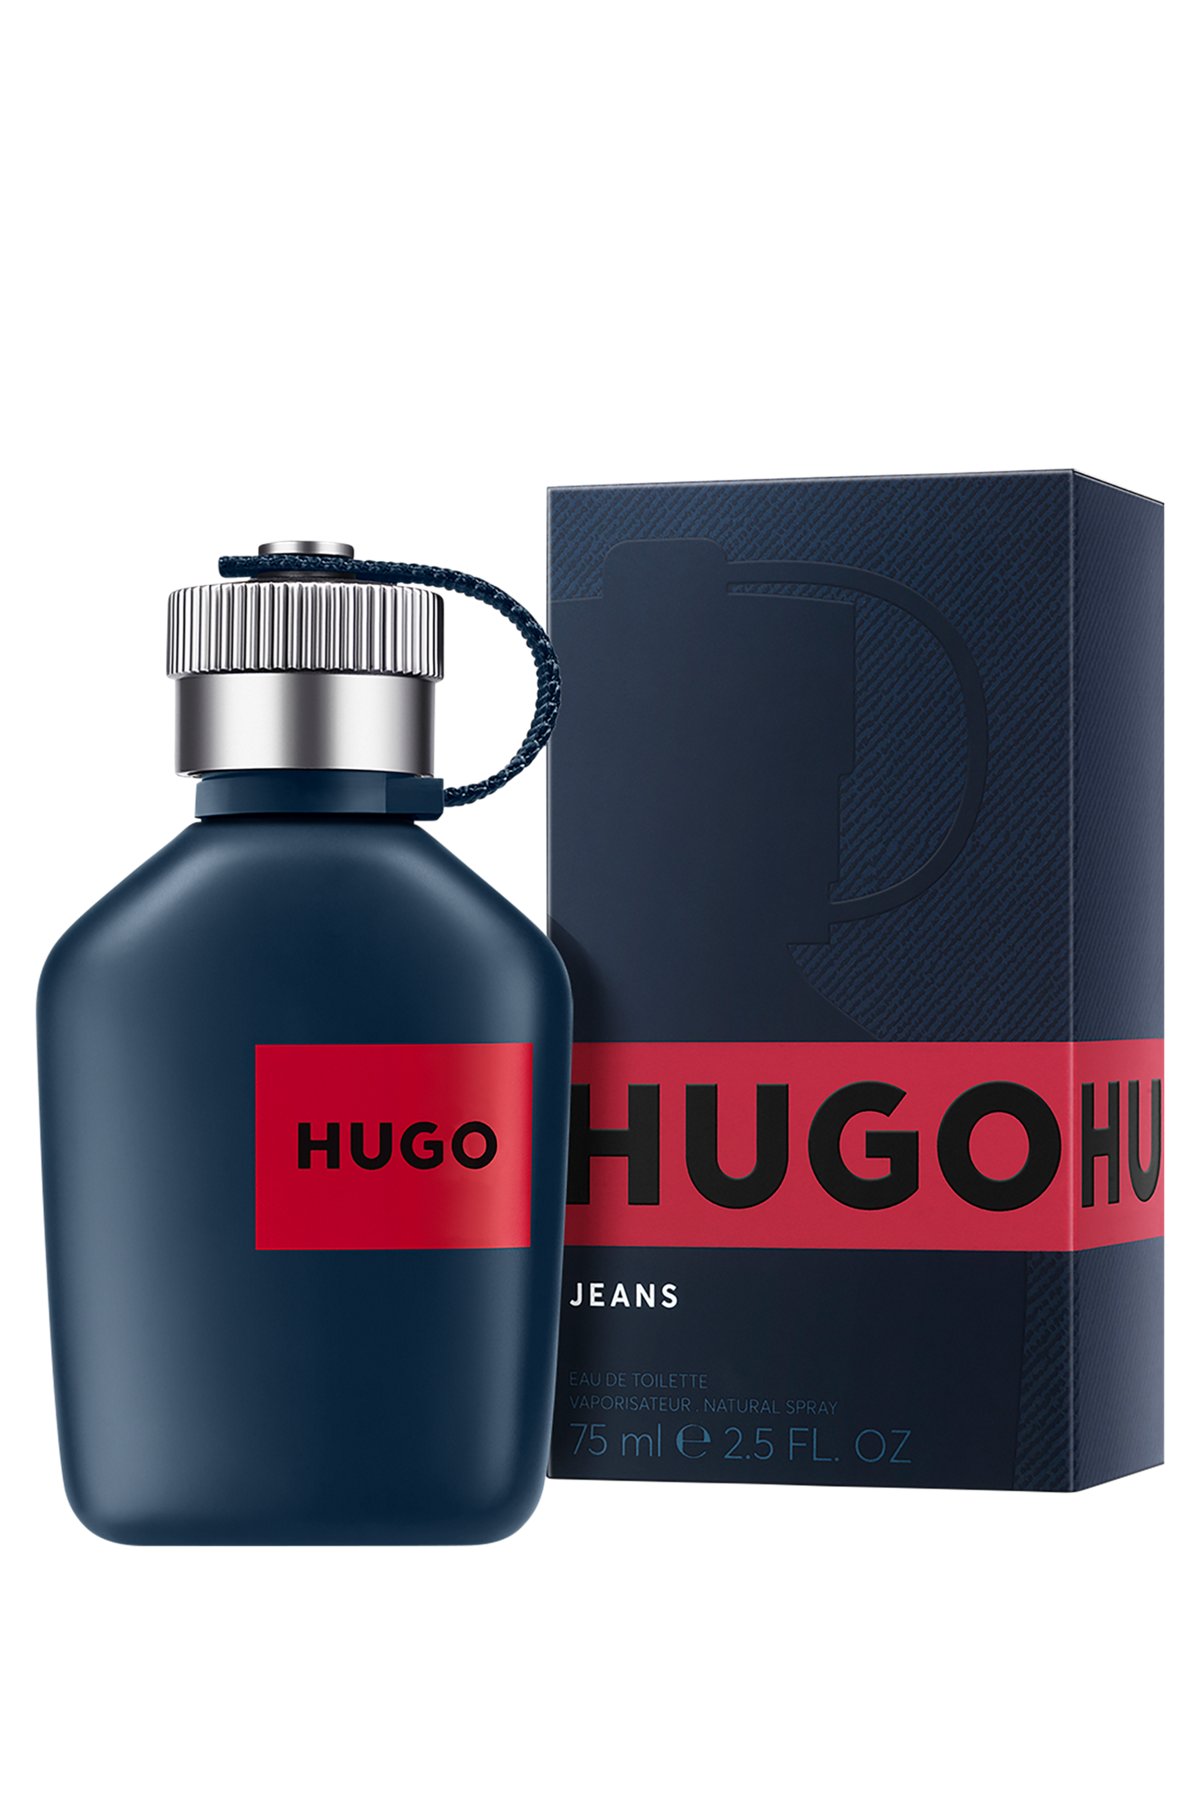 HUGO Jeans Eau de Toilette 75 ml, Assorted-Pre-Pack